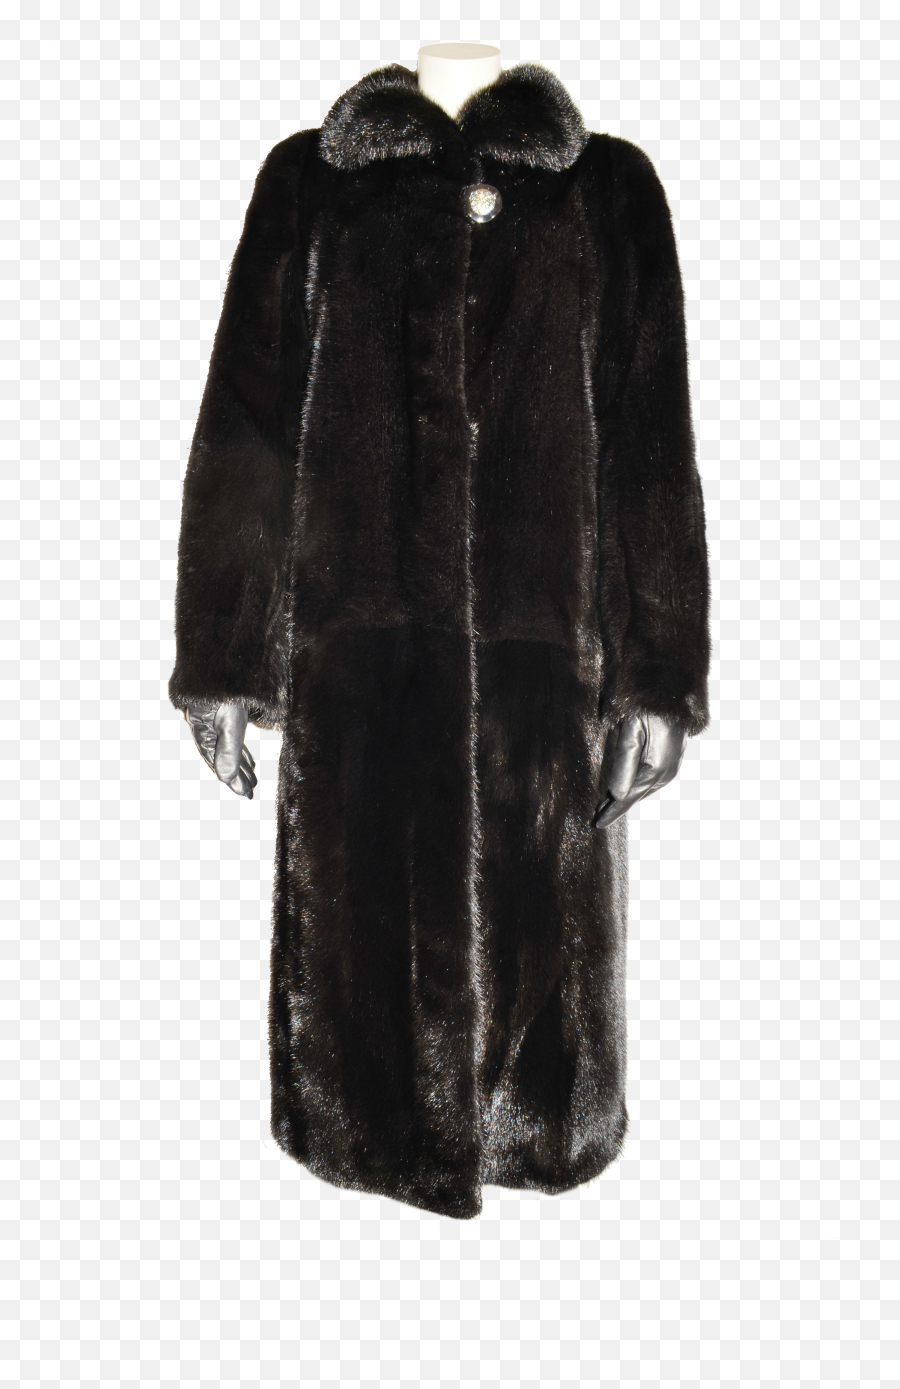 Long Black Fur Coat Png Image For Free - Black Fur Coat Png,Furry Png